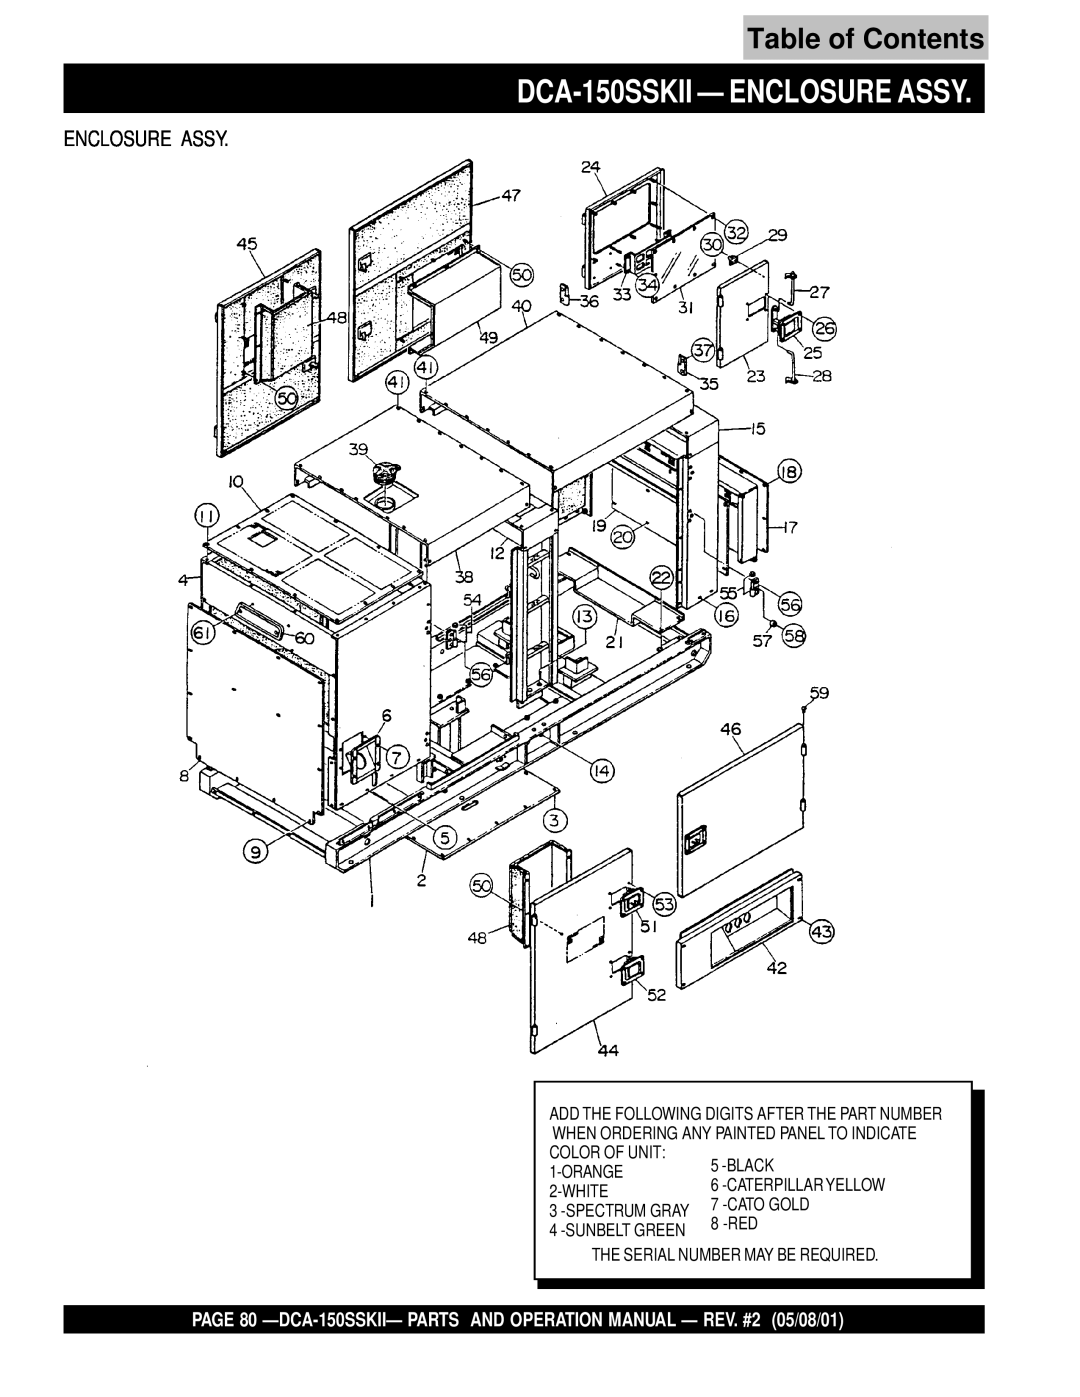 Multiquip operation manual DCA-150SSKII - ENCLOSURE ASSY, Table of Contents, Enclosure Assy 